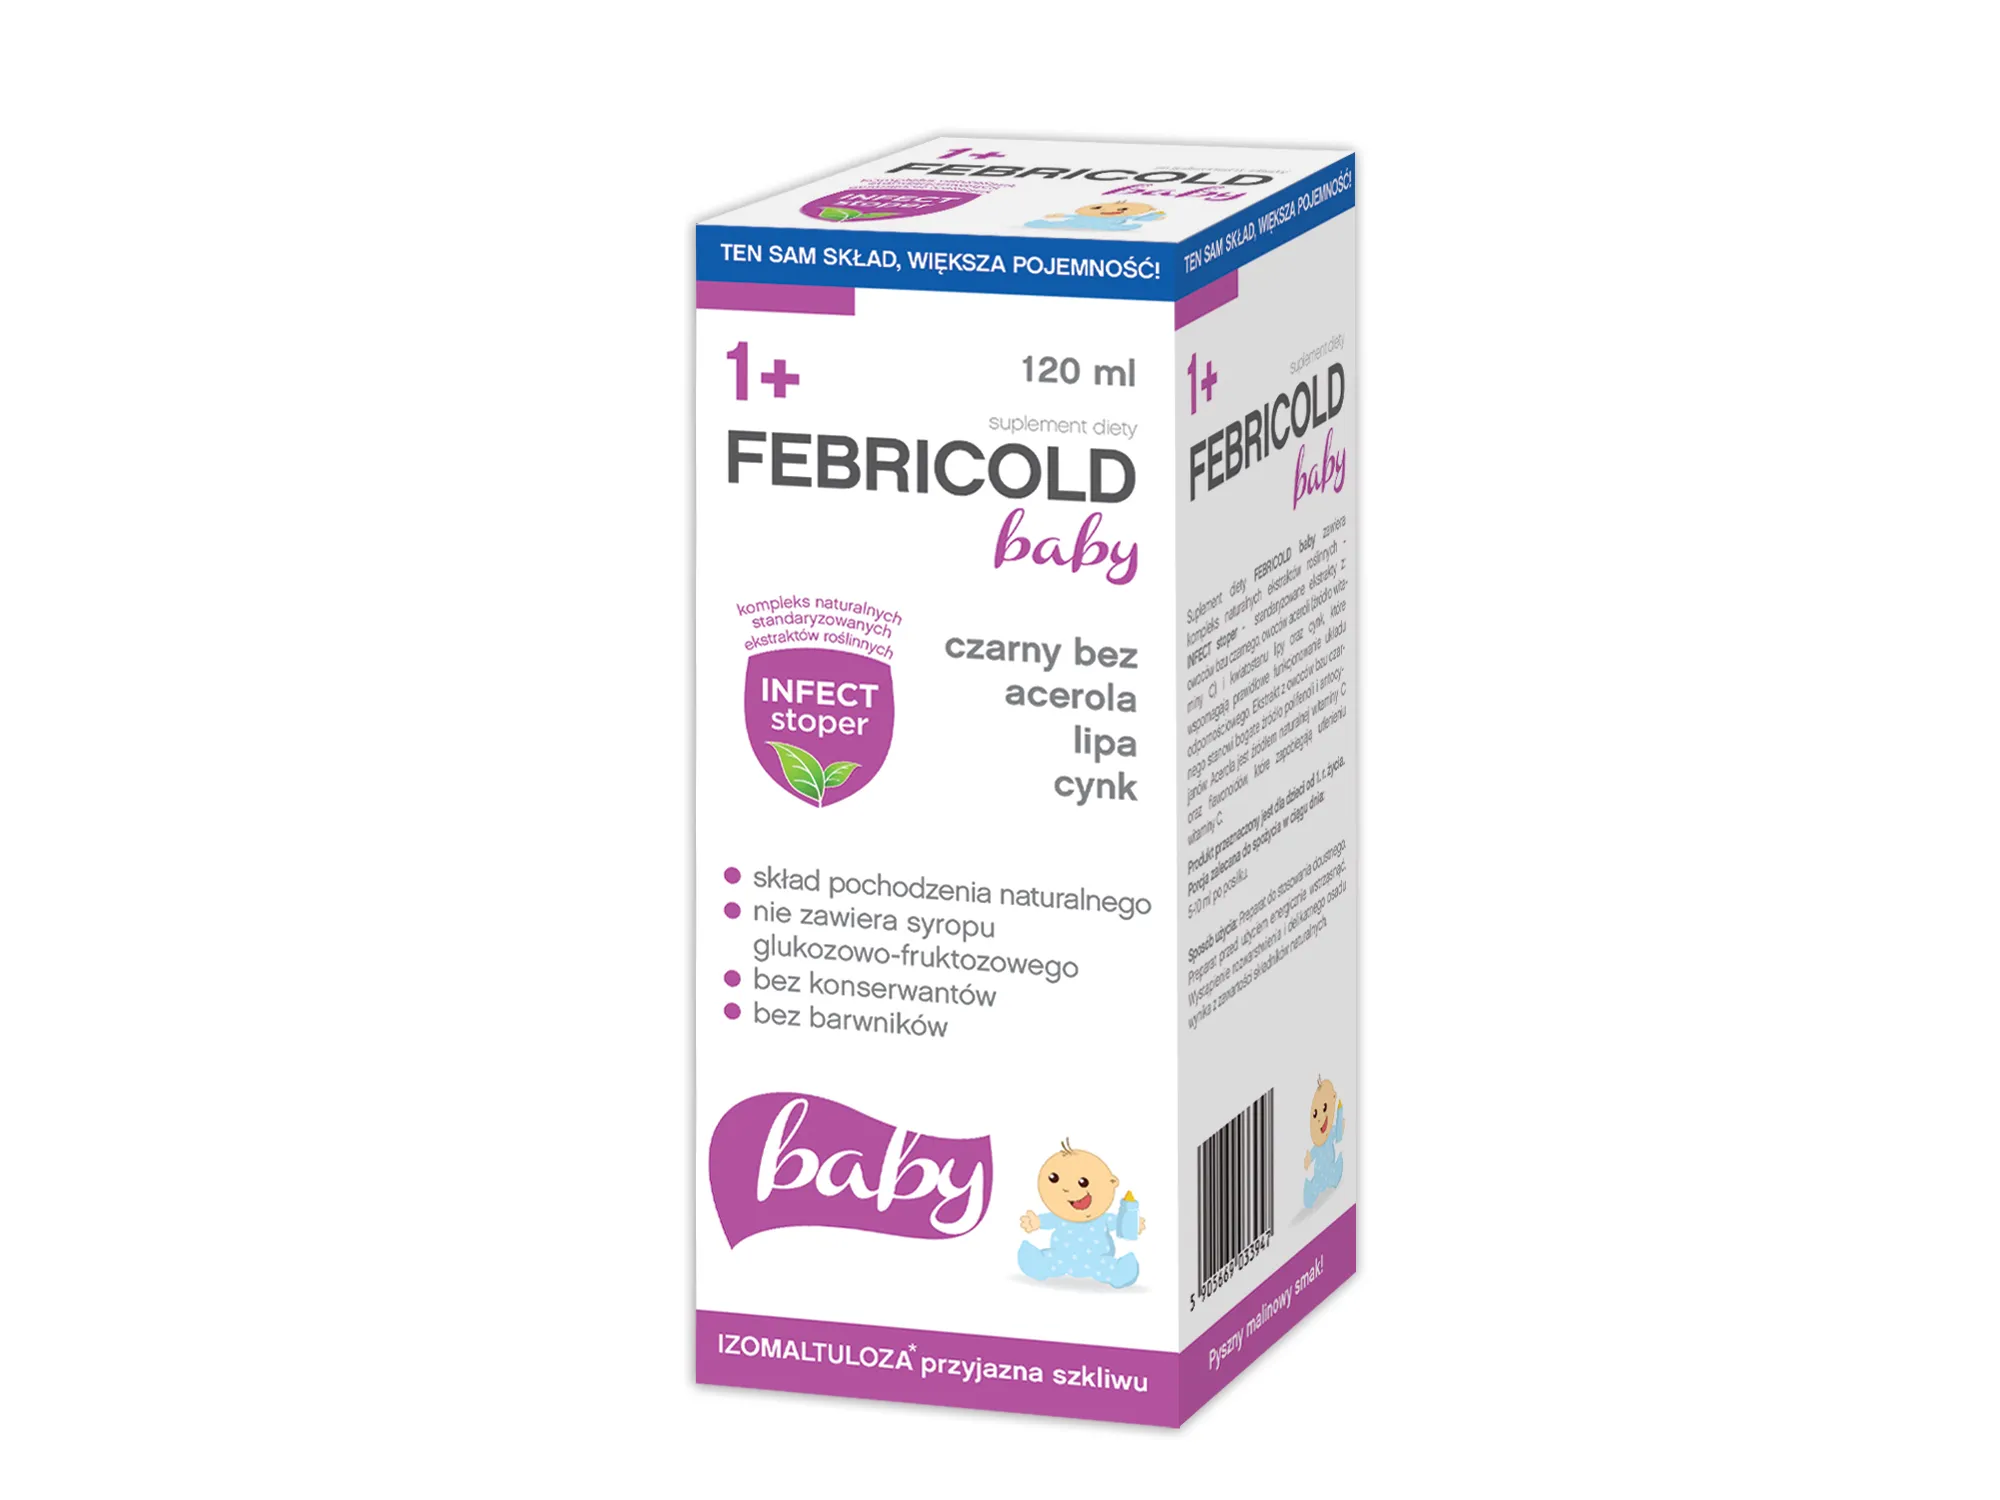 Febricold baby 1+ płyn, suplement diety, 120ml